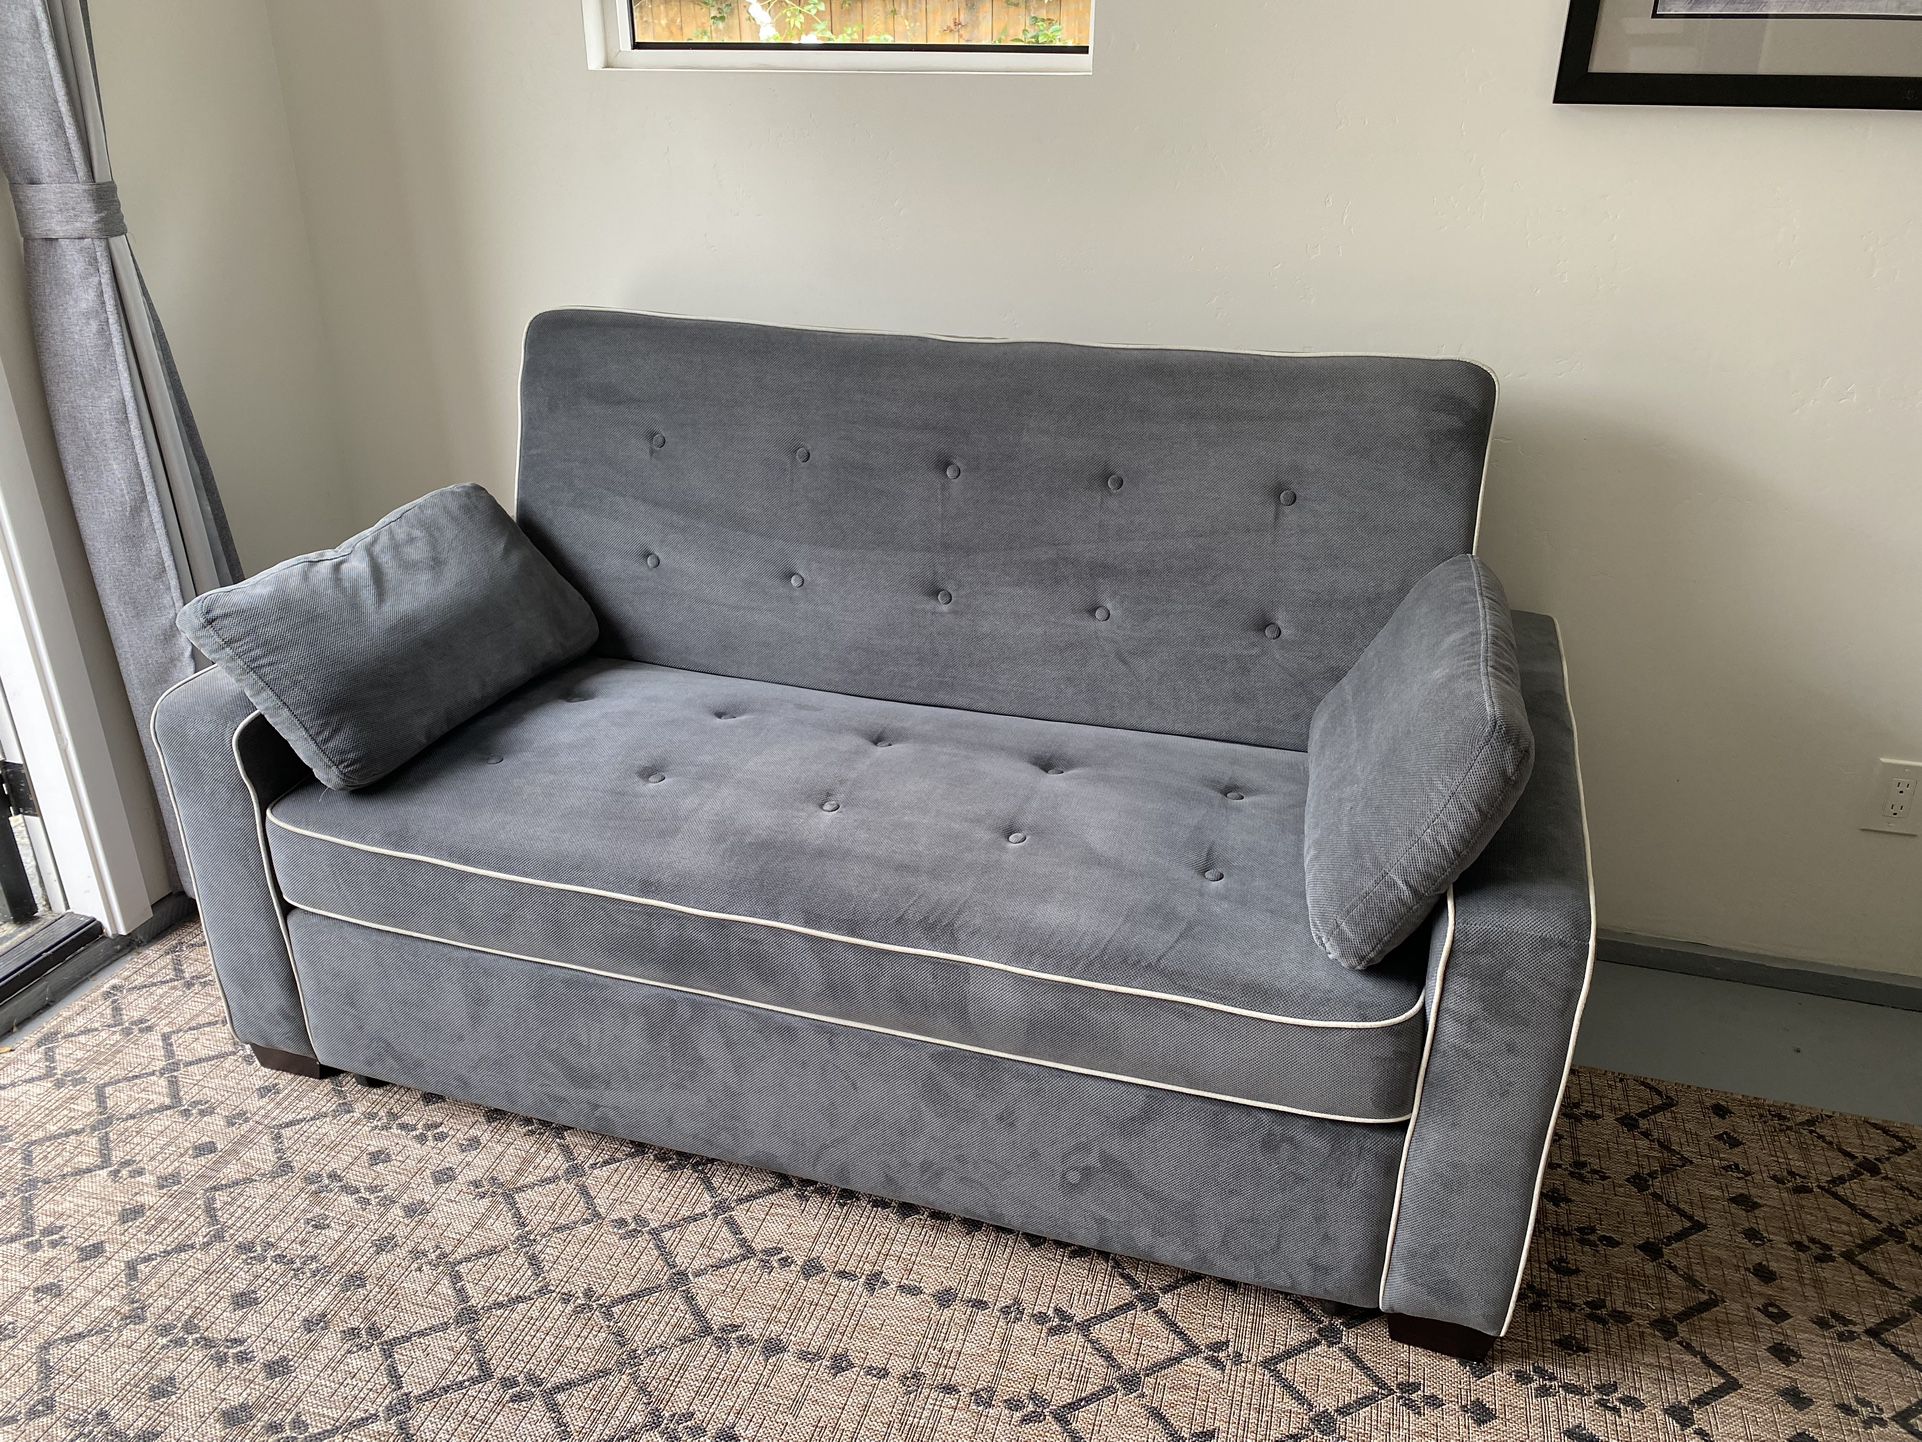 Grey Serta Sleeper Sofa